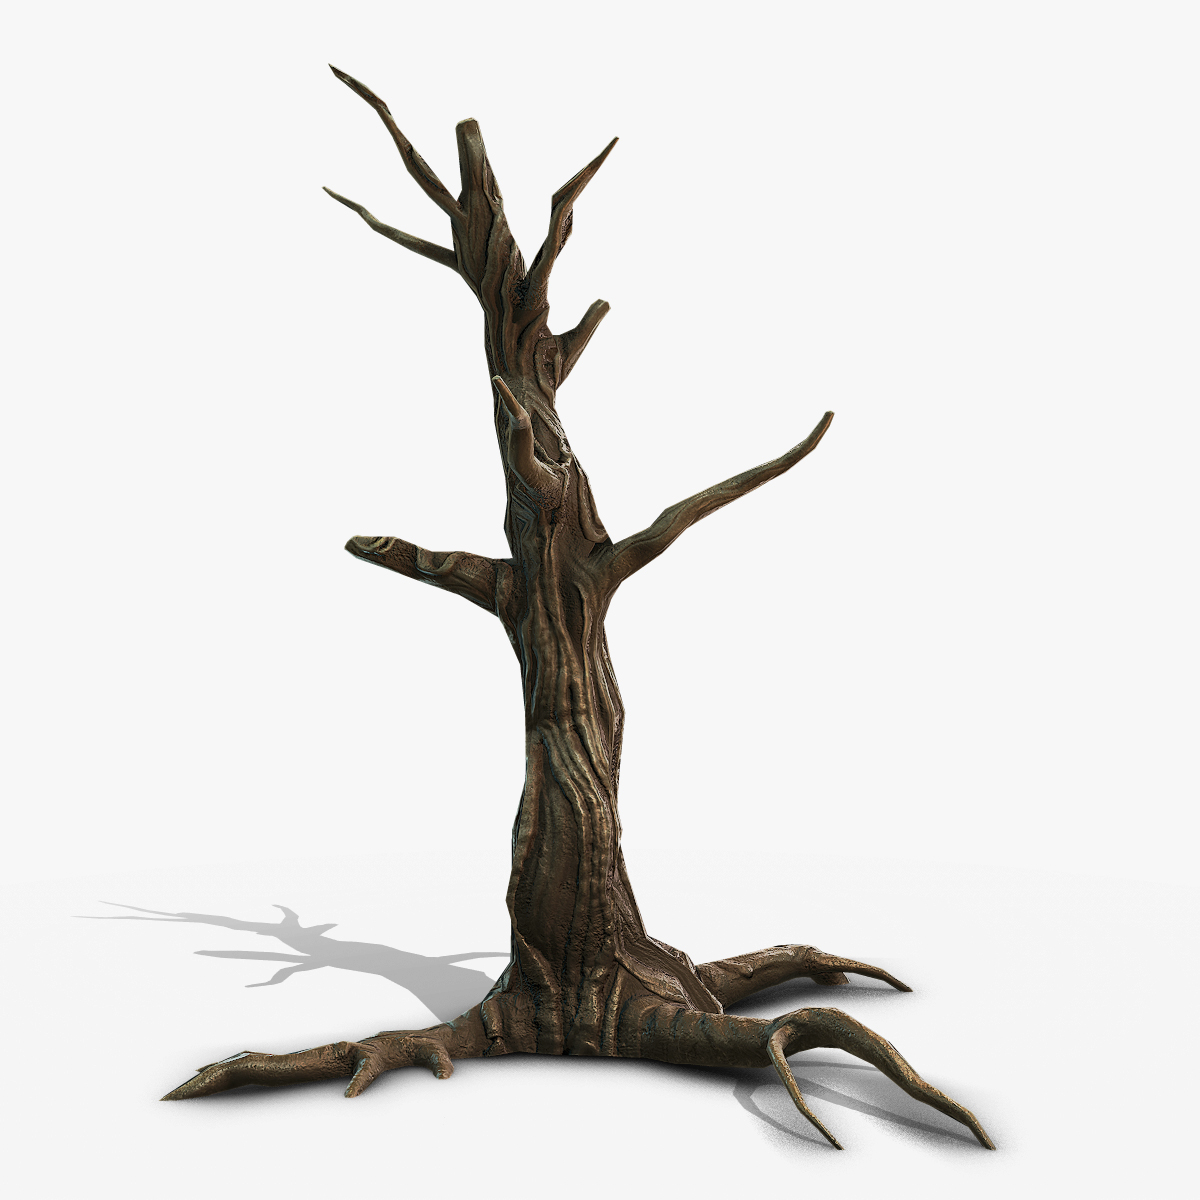 Swamp dead tree 3D model - TurboSquid 1269758